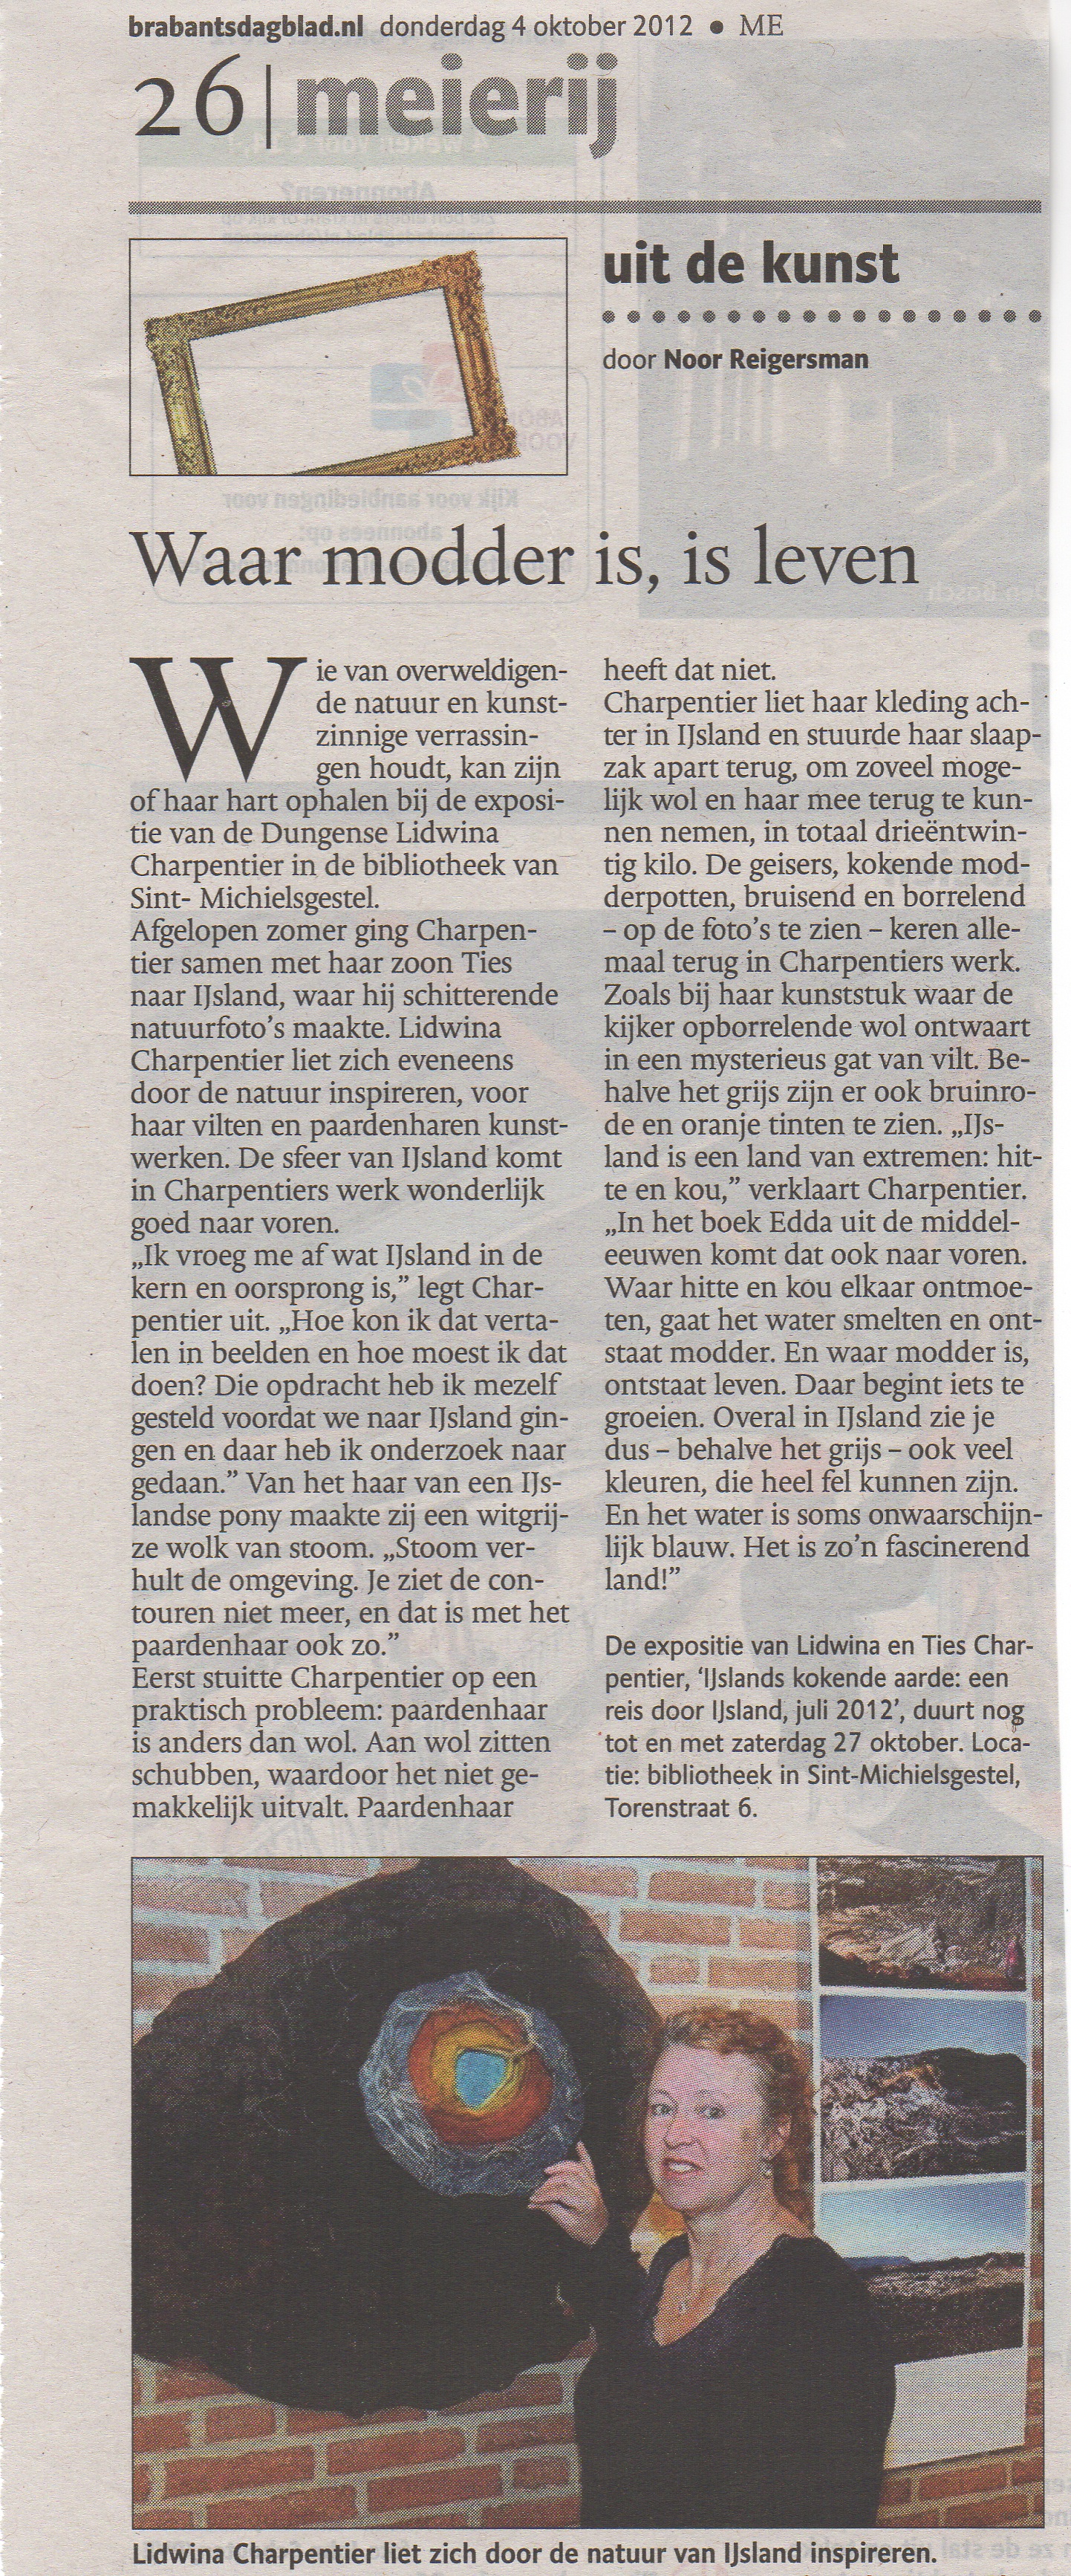 Brabants Dagblad 4 okt door Noor Reigersman lidwina Charpentier